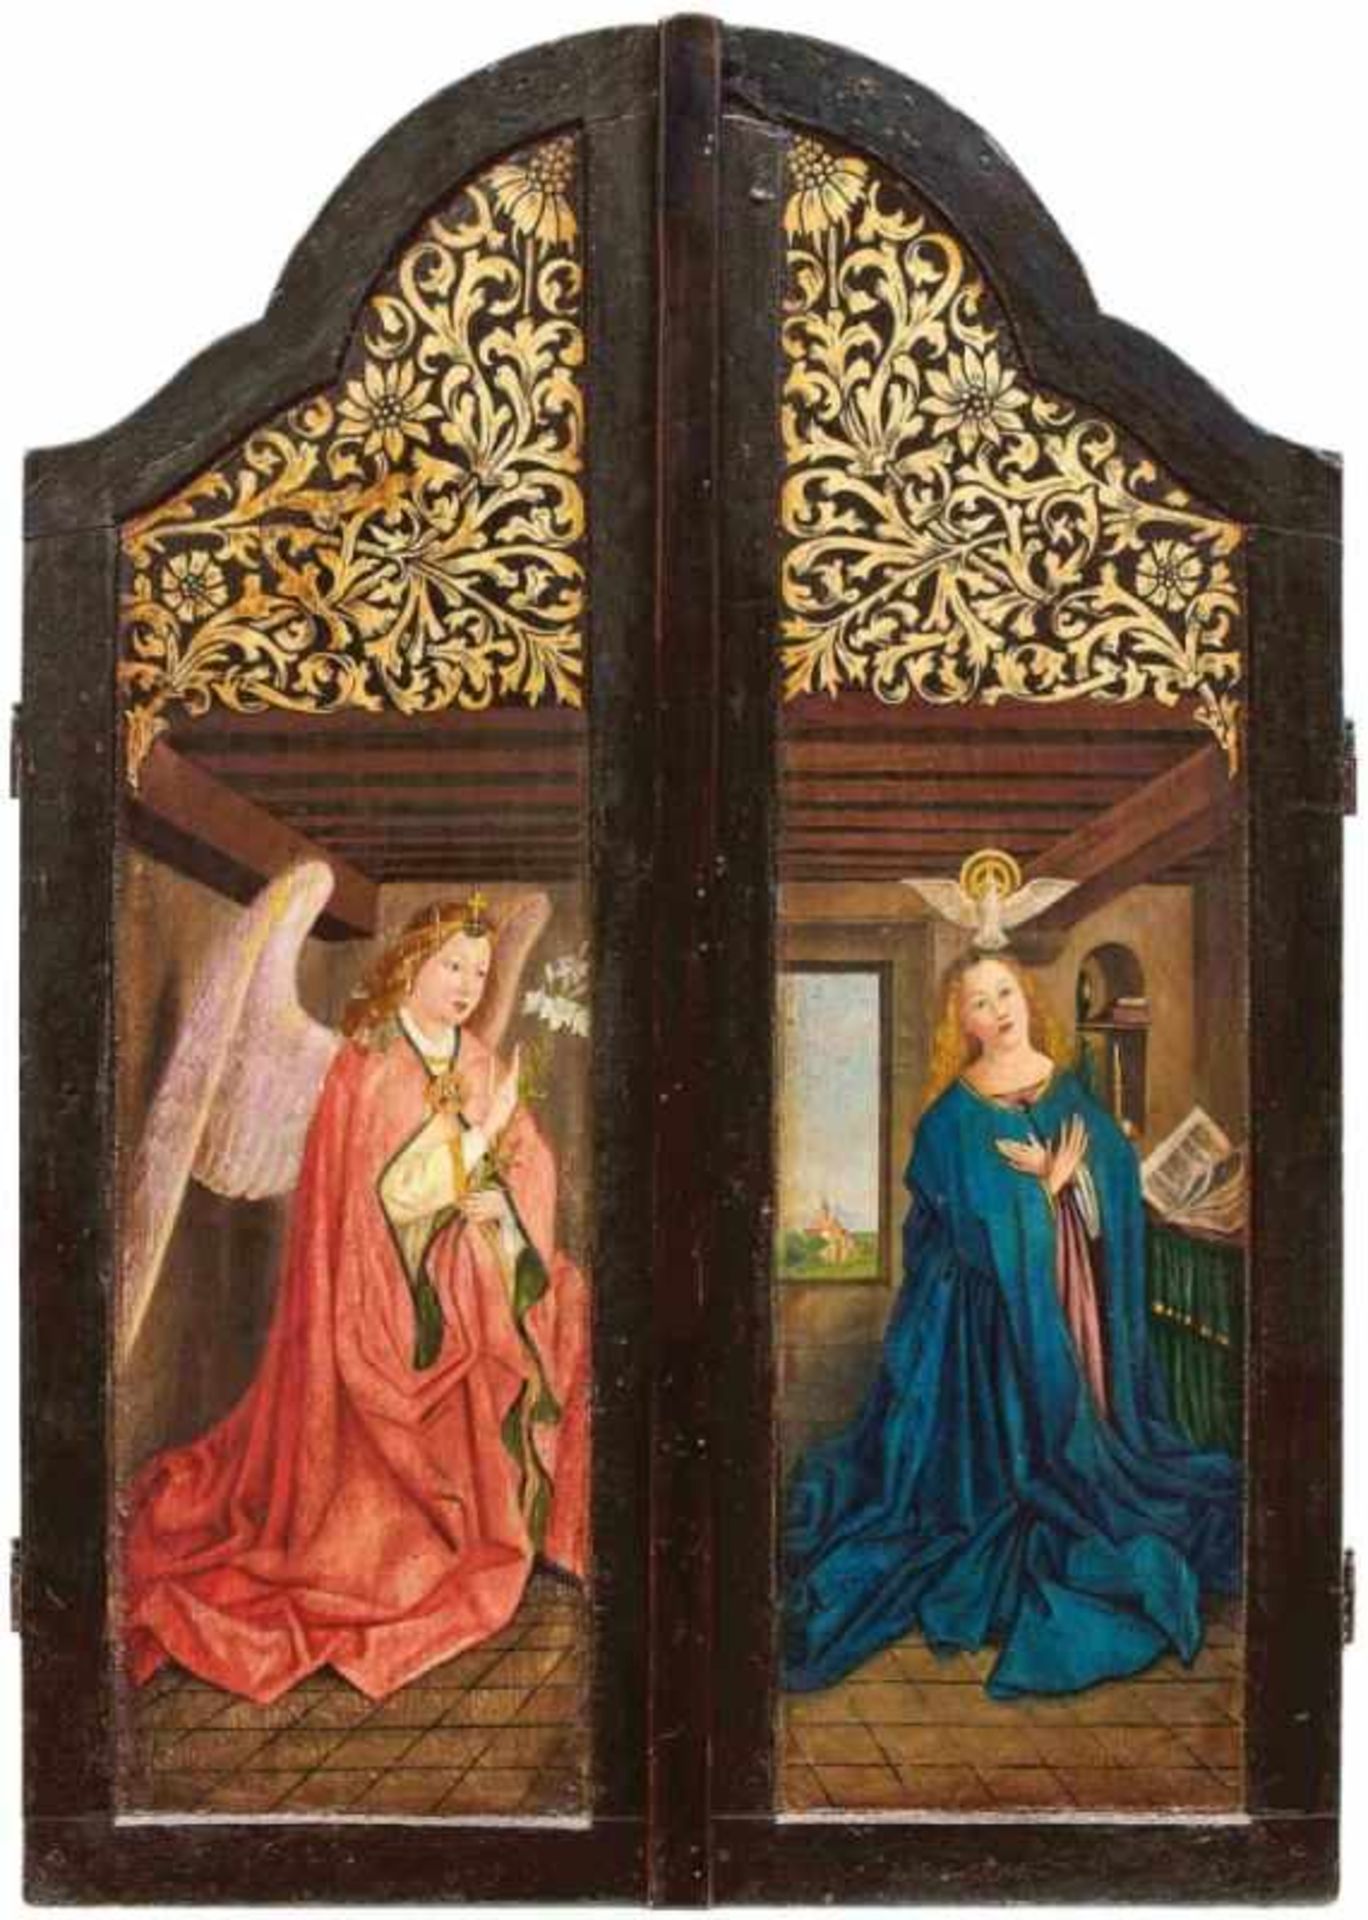 Zwei Seitentafeln eines Flügelaltars mit Verkündigung und HeiligenDeutschland, 18. Jh. und